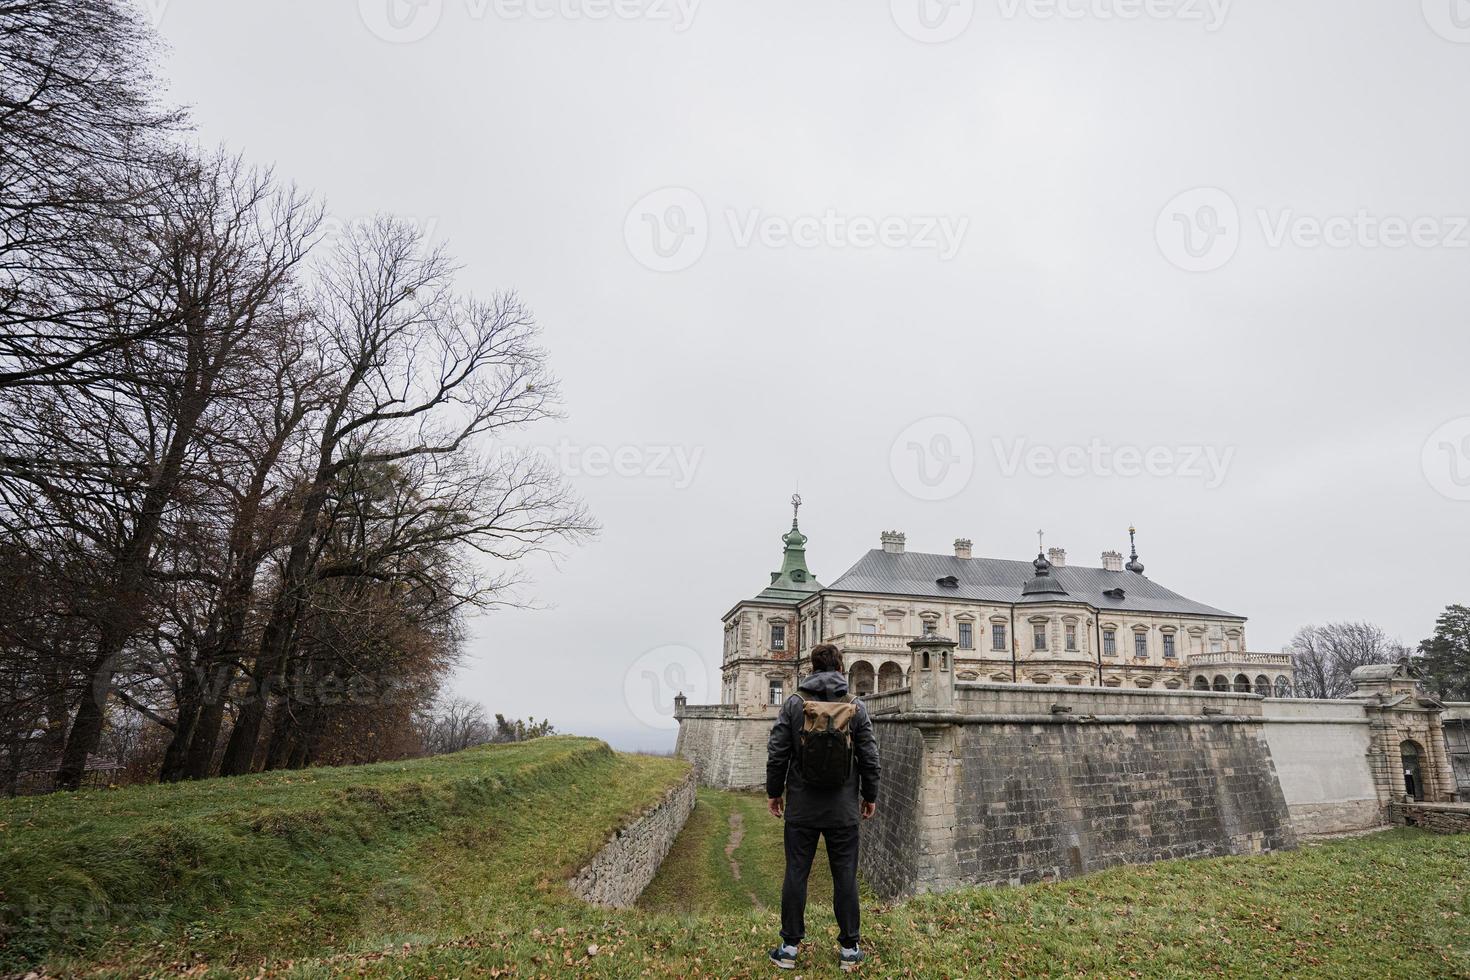 costas do homem turista com mochila visitam o castelo pidhirtsi, região de lviv, ucrânia. foto